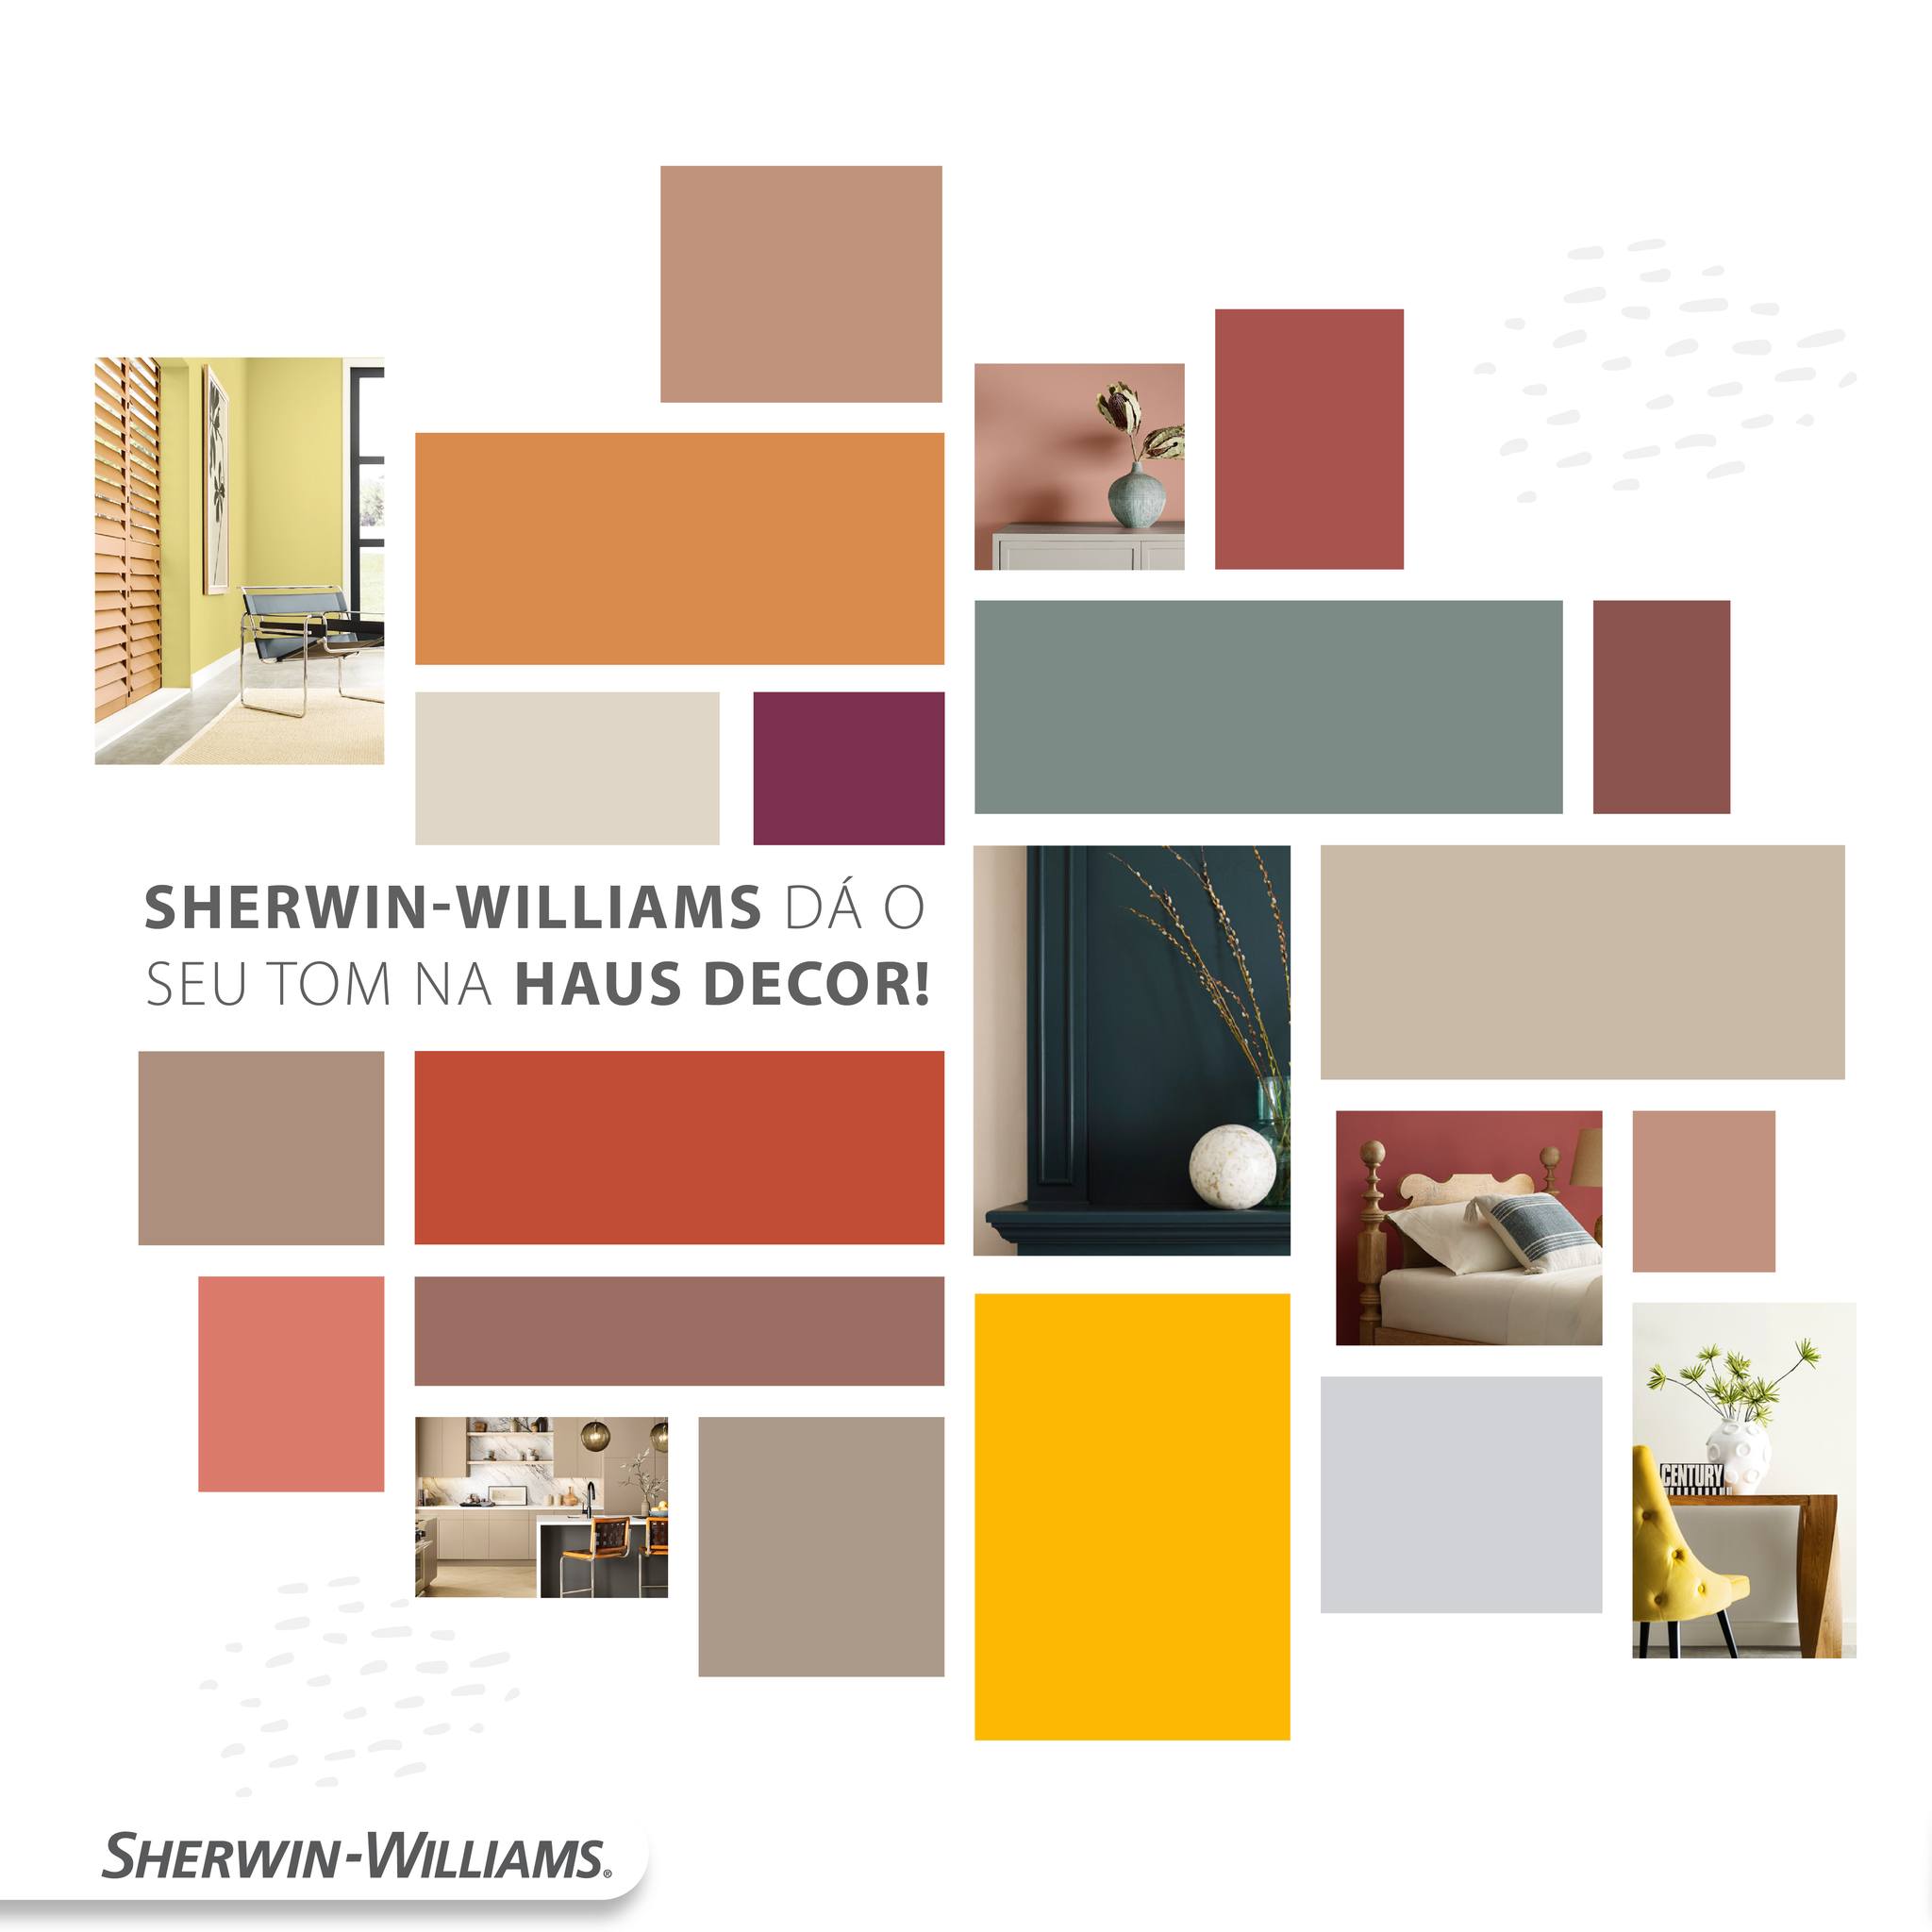 Sherwin-Williams apresenta experiências interativas em sua estreia na Haus Decor Show